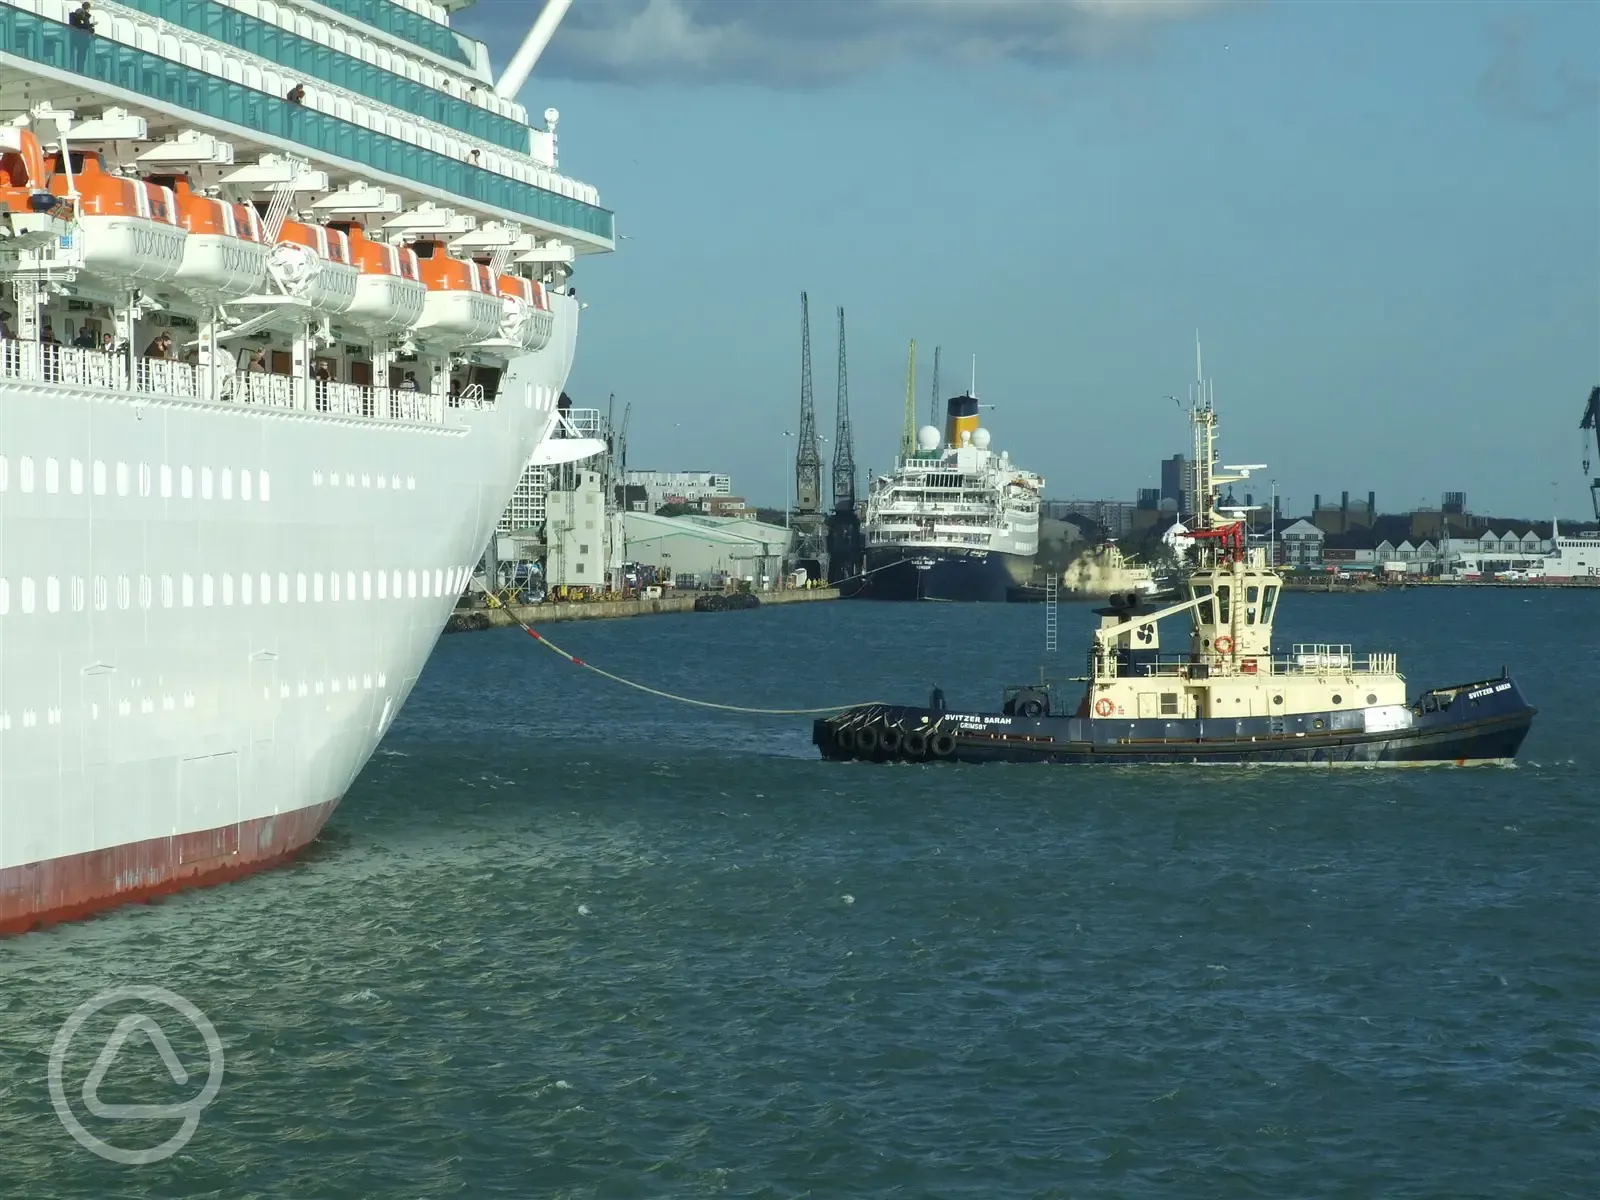 Cruise ship in Southampton water